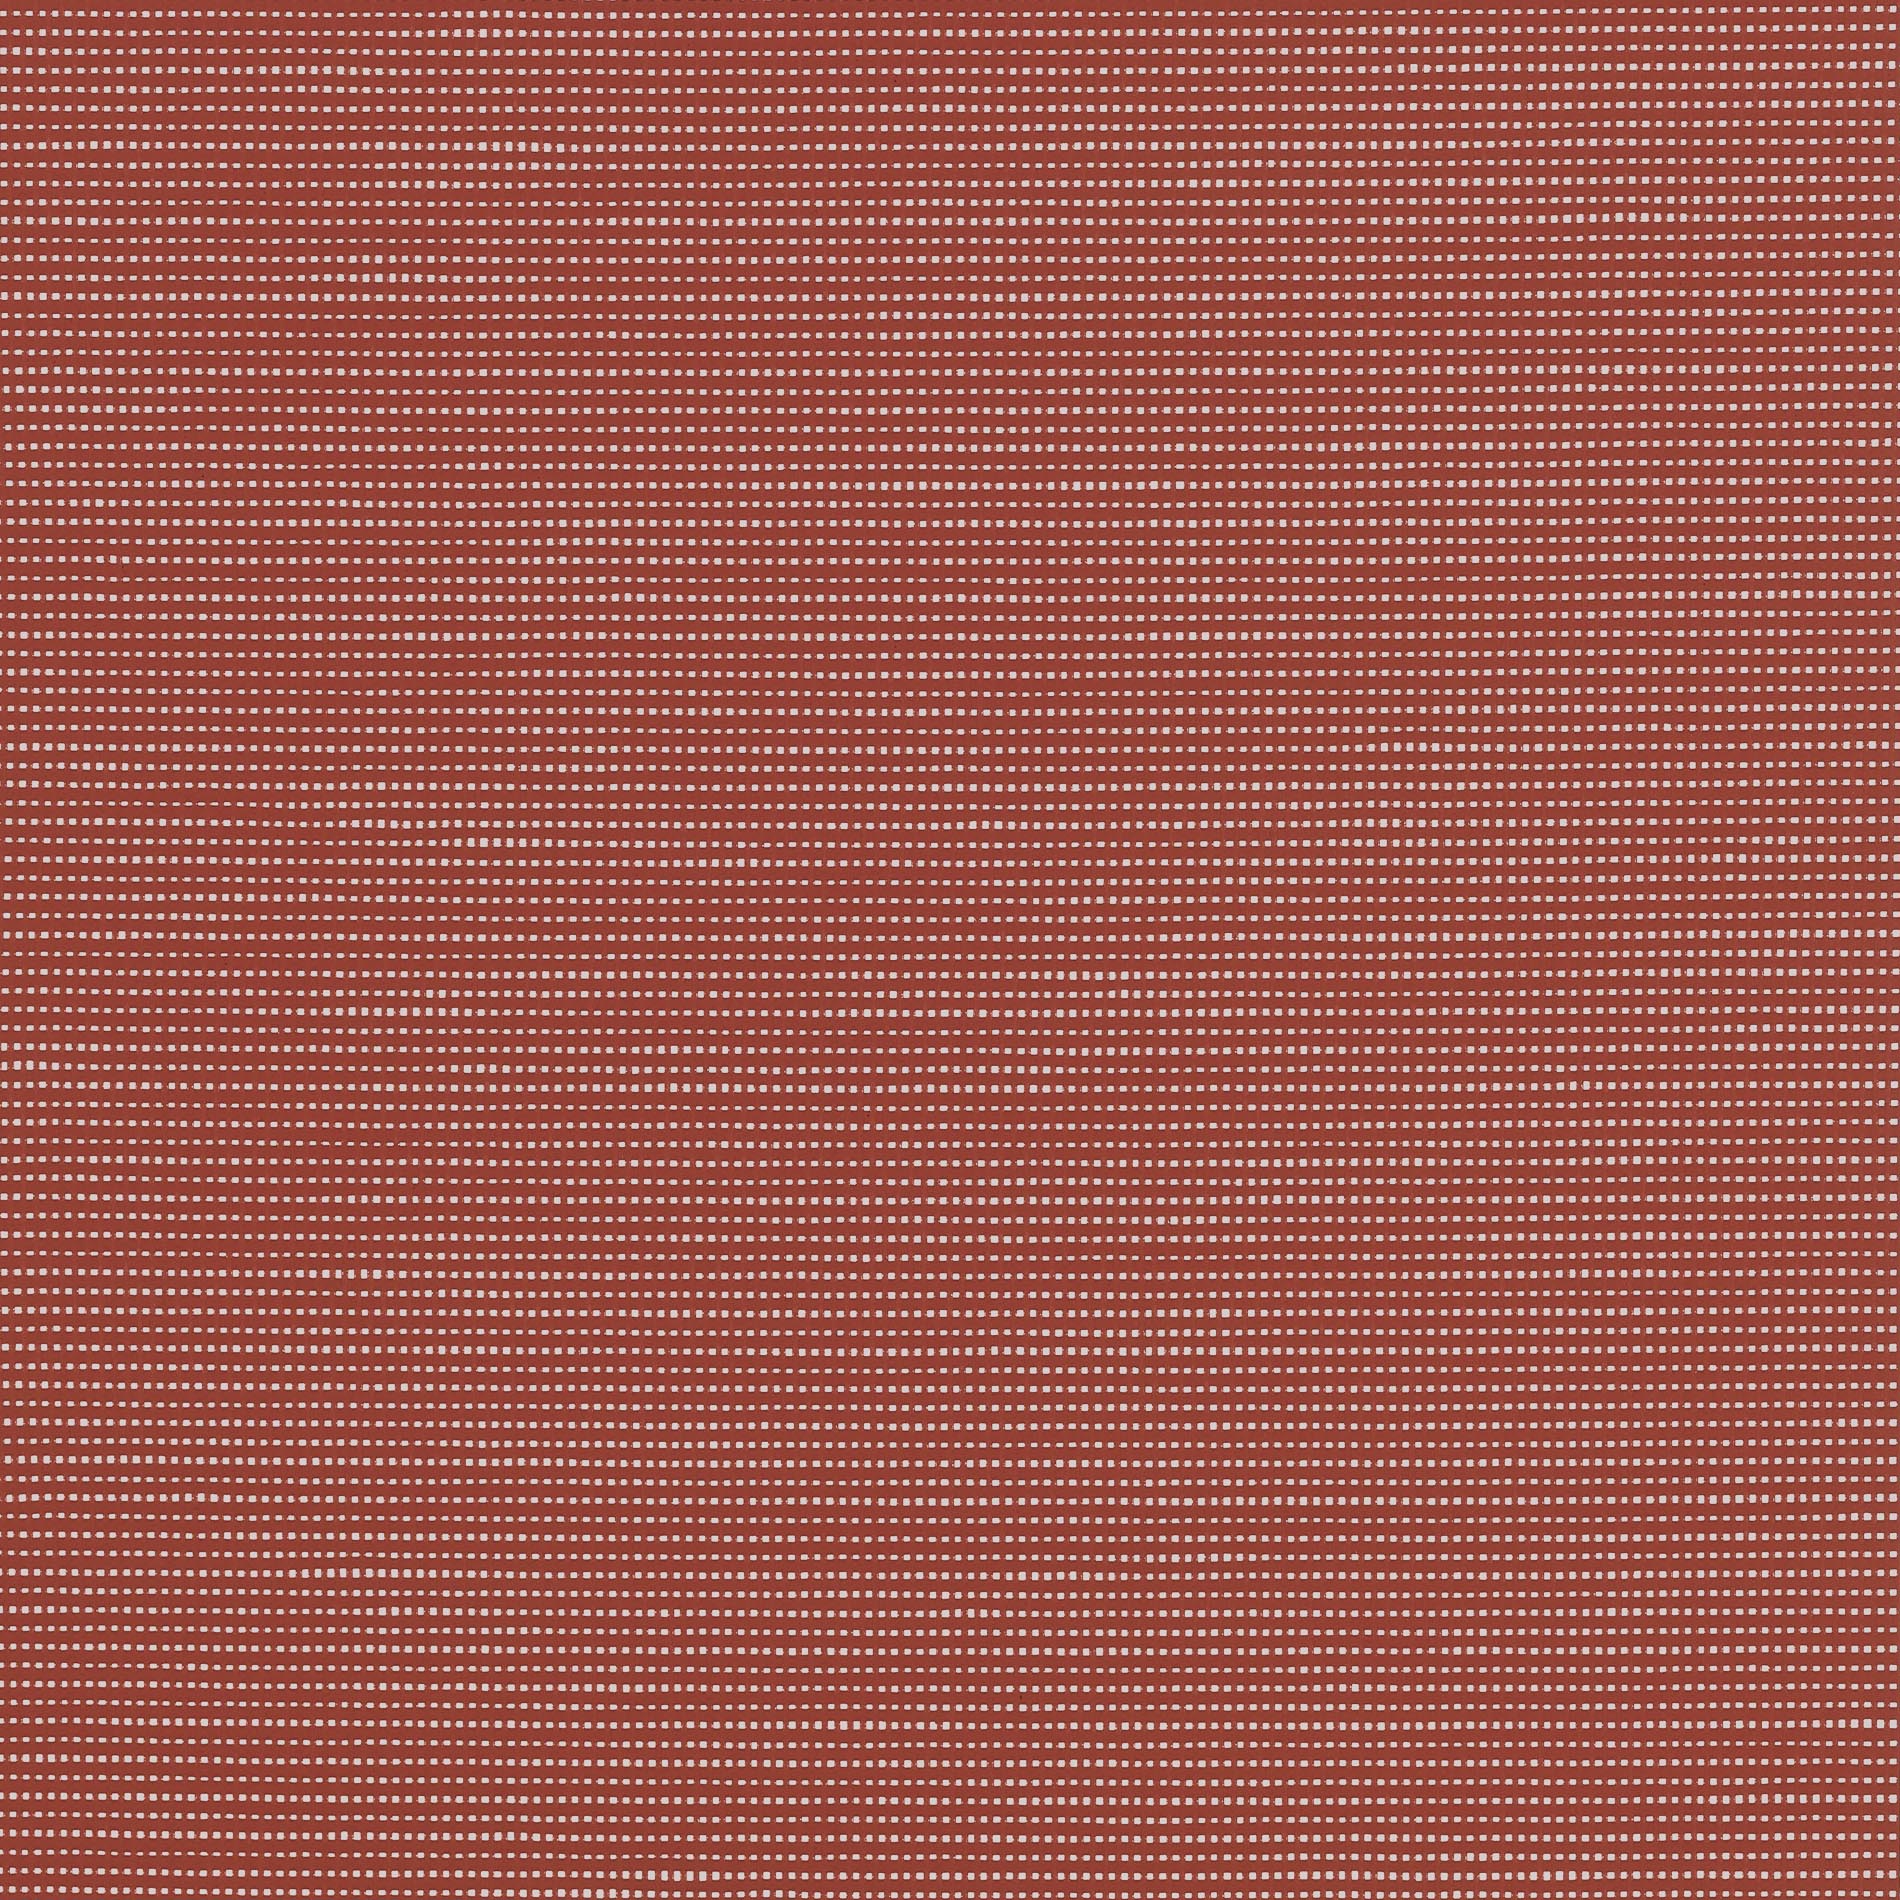 Altex - Fabric - SOLTIS HORIZON 86 - Brick - 86-51180